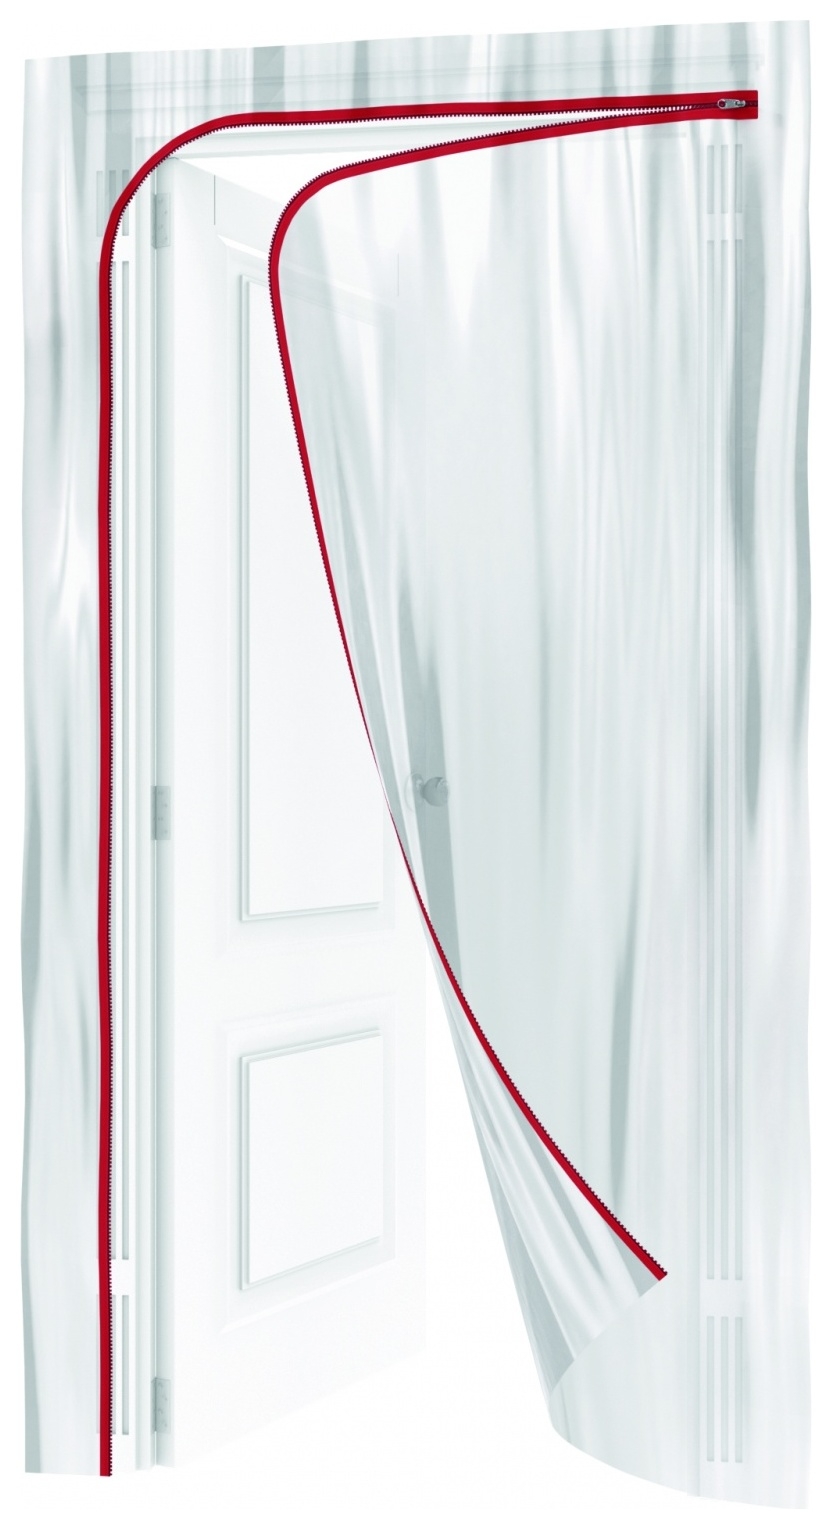 Пленочная дверь на молнии типа L,220 X 120 Cm, с малярной лентой 2.5 см х 10 м